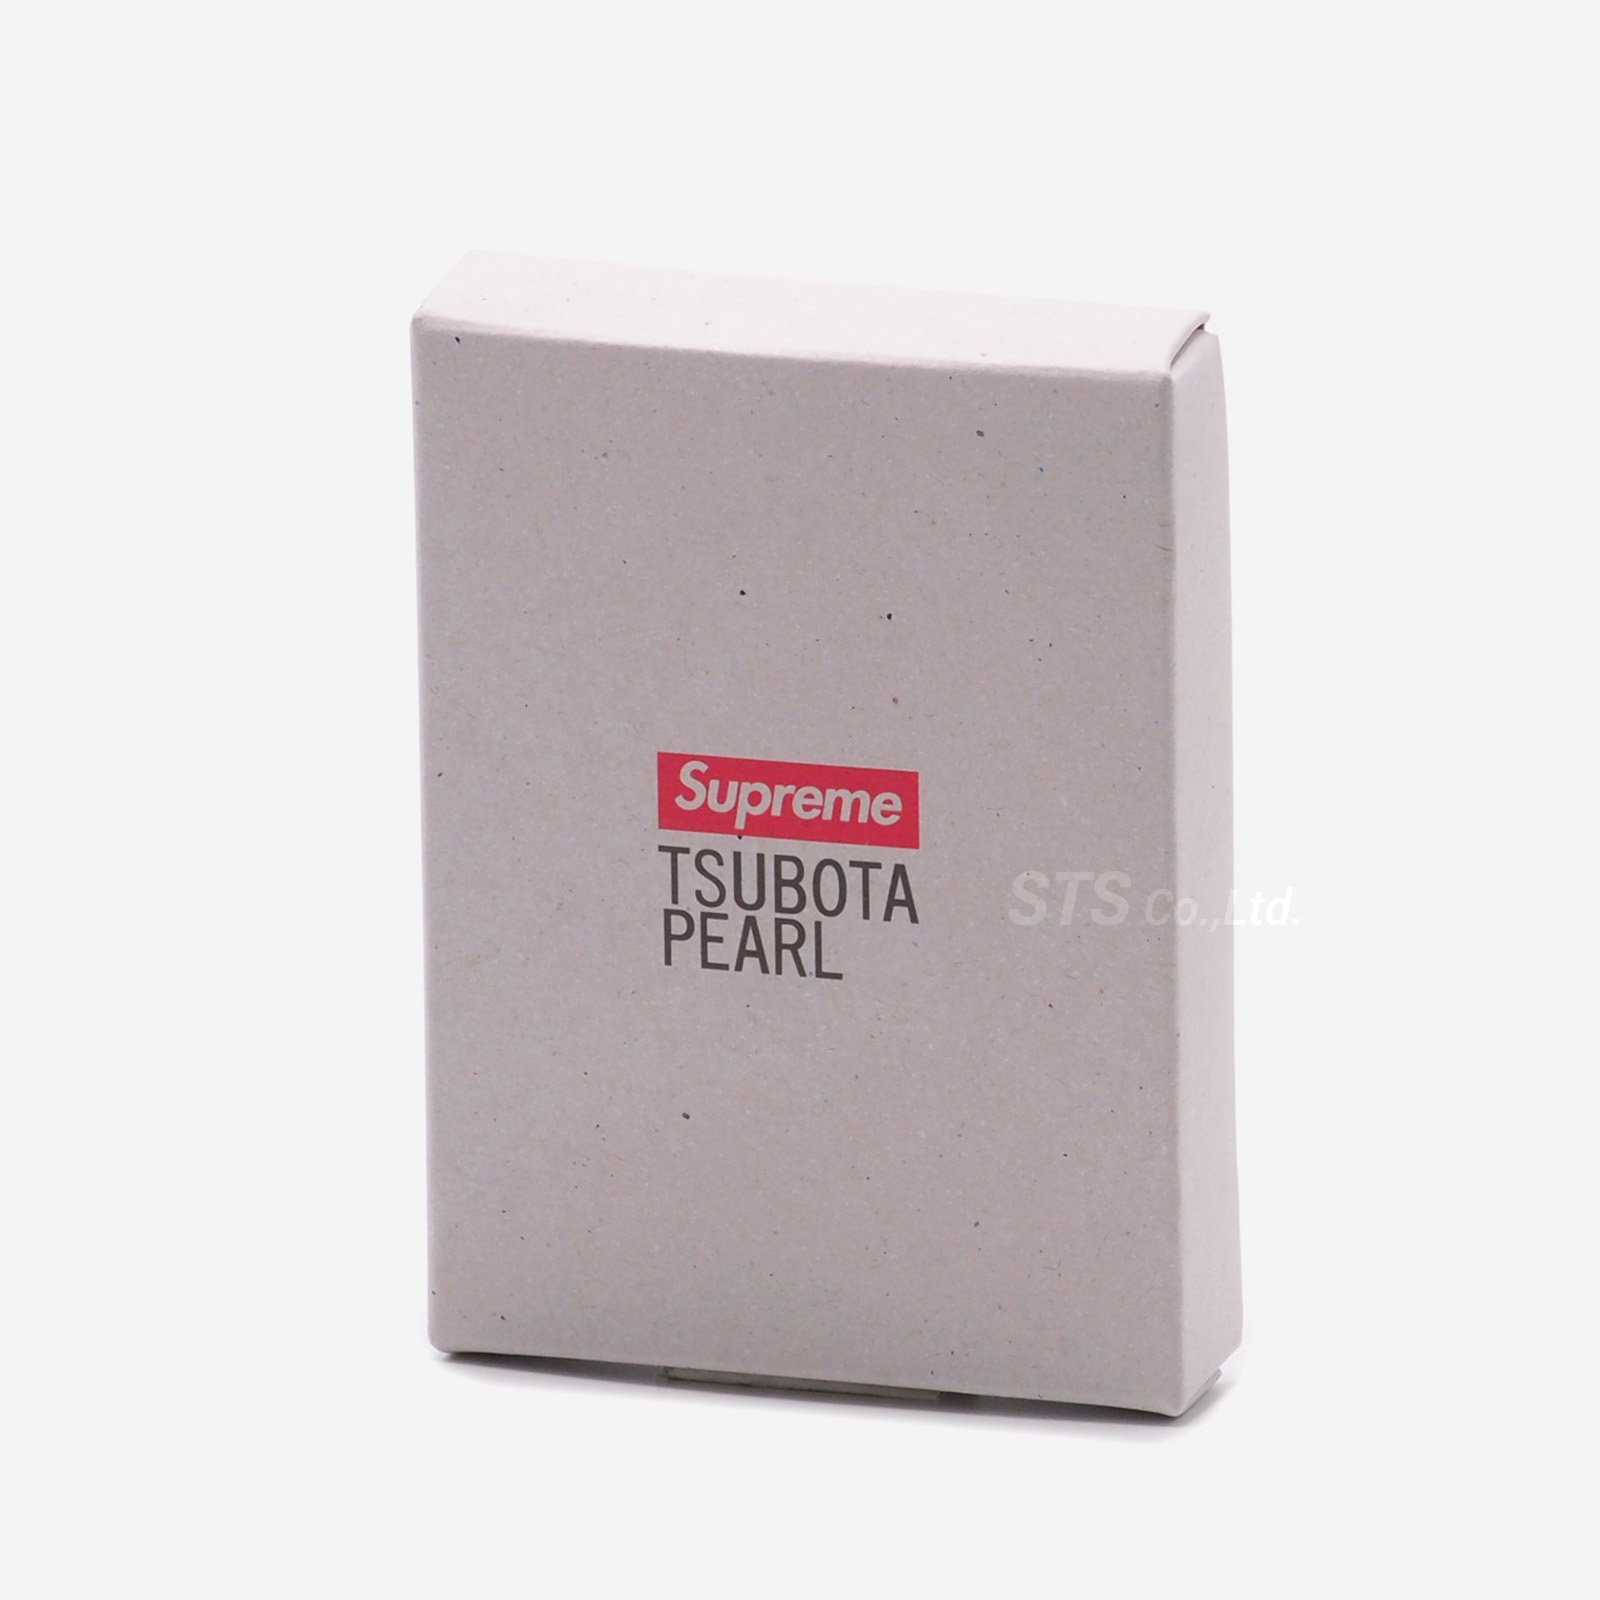 Supreme/Tsubota Pearl Hard Edge Lighter - UG.SHAFT